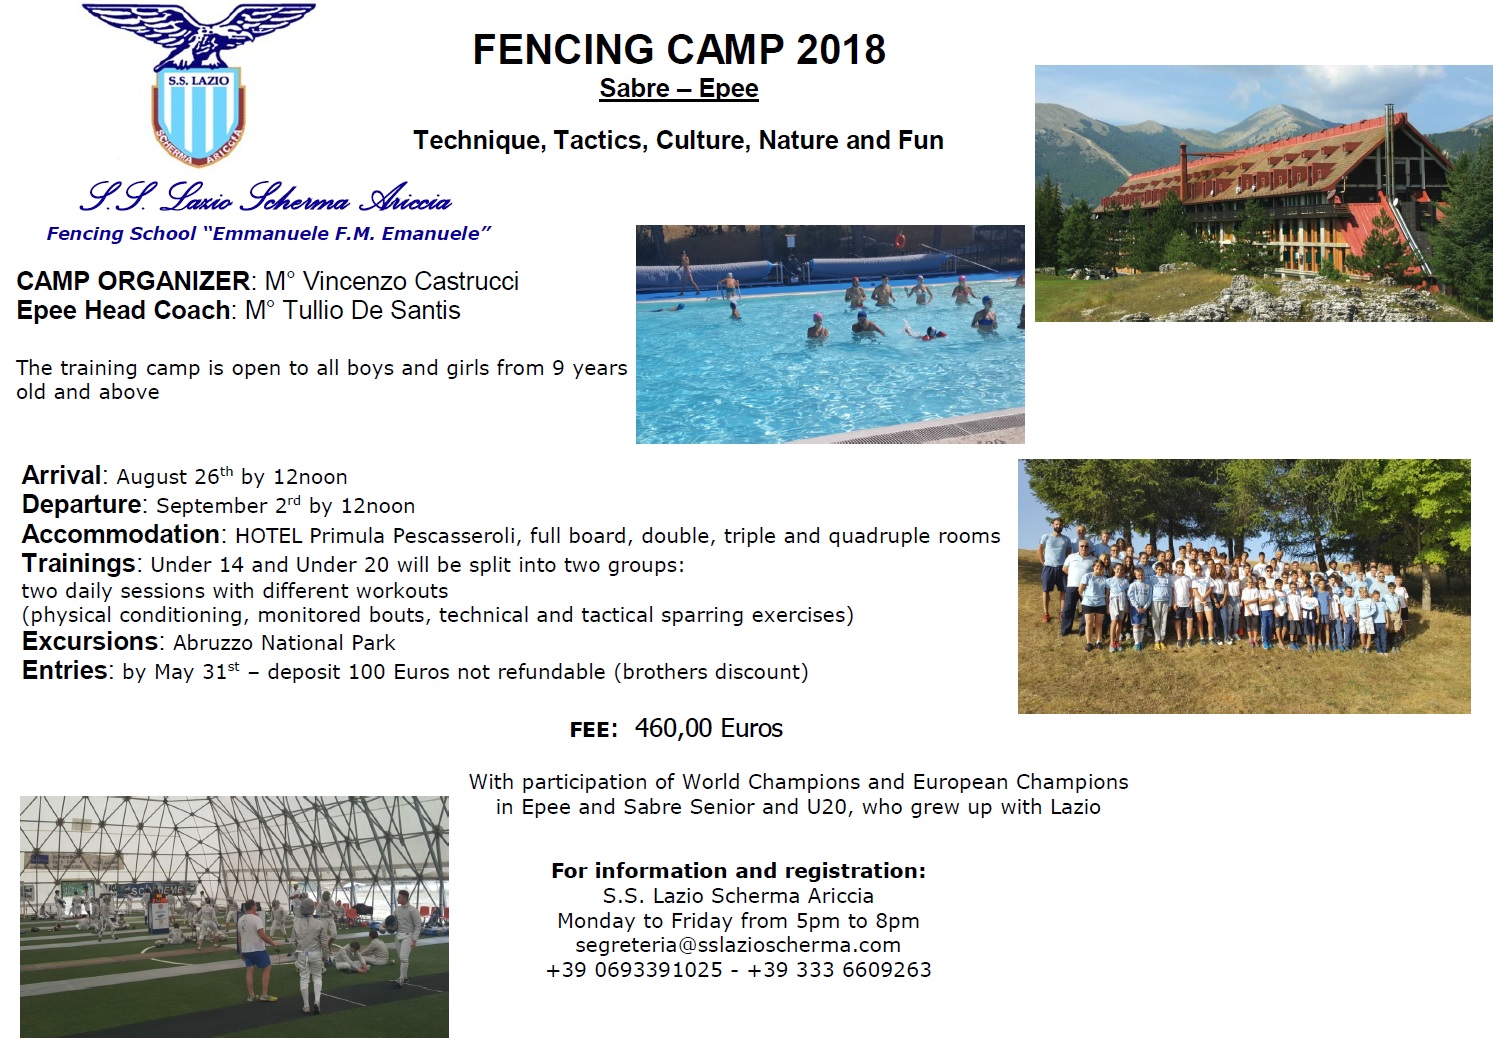 S.S. Lazio Fencing Camp 2018